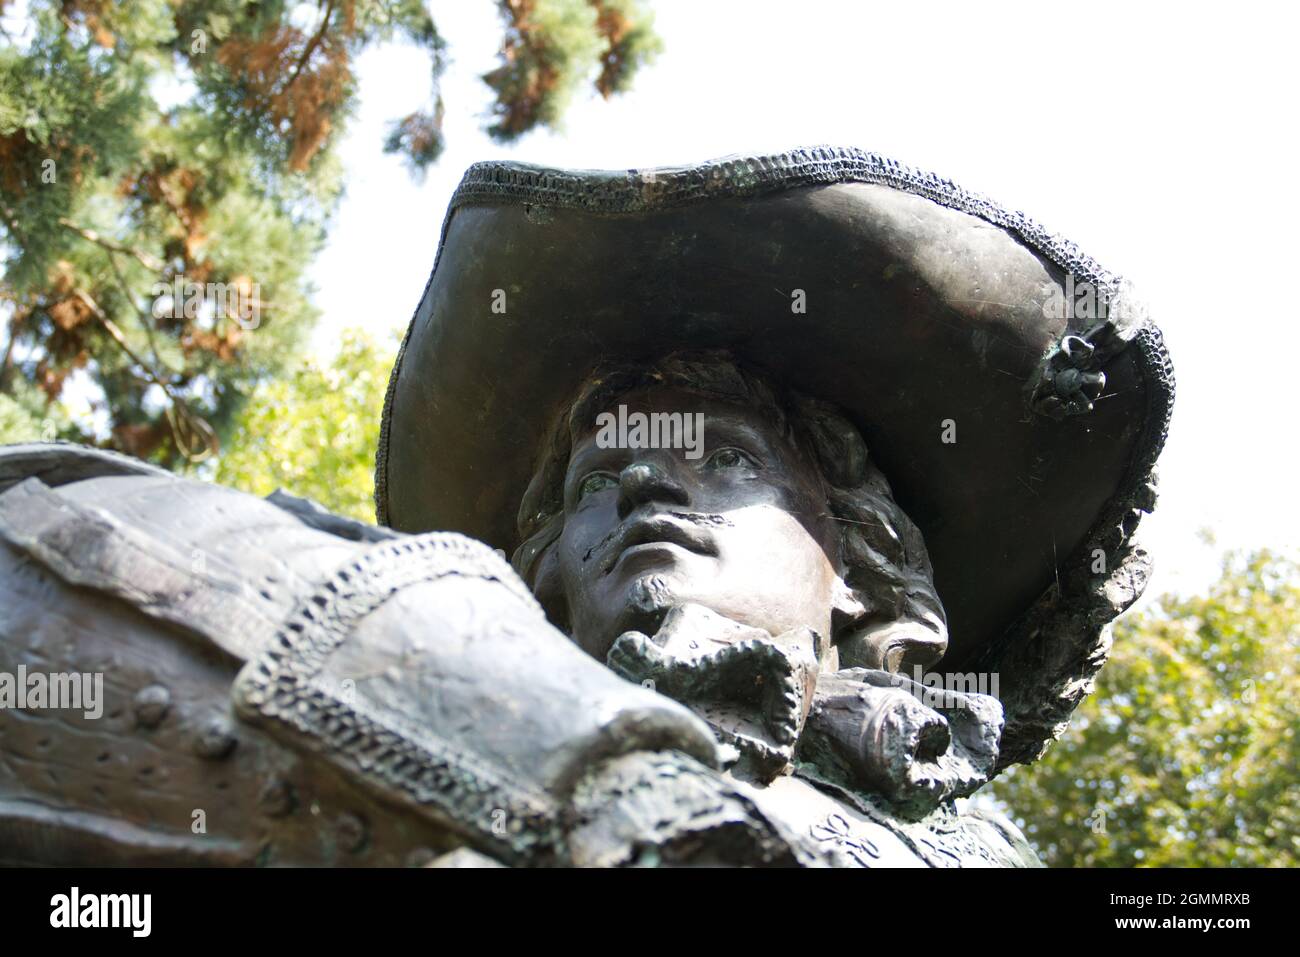 Maastricht, Niederlande - 13 2021. September: Bronzestatue von d'Artagnan, einem französischen Musketier, der Ludwig XIV. Als Kapitän der Musketiere diente. Stockfoto